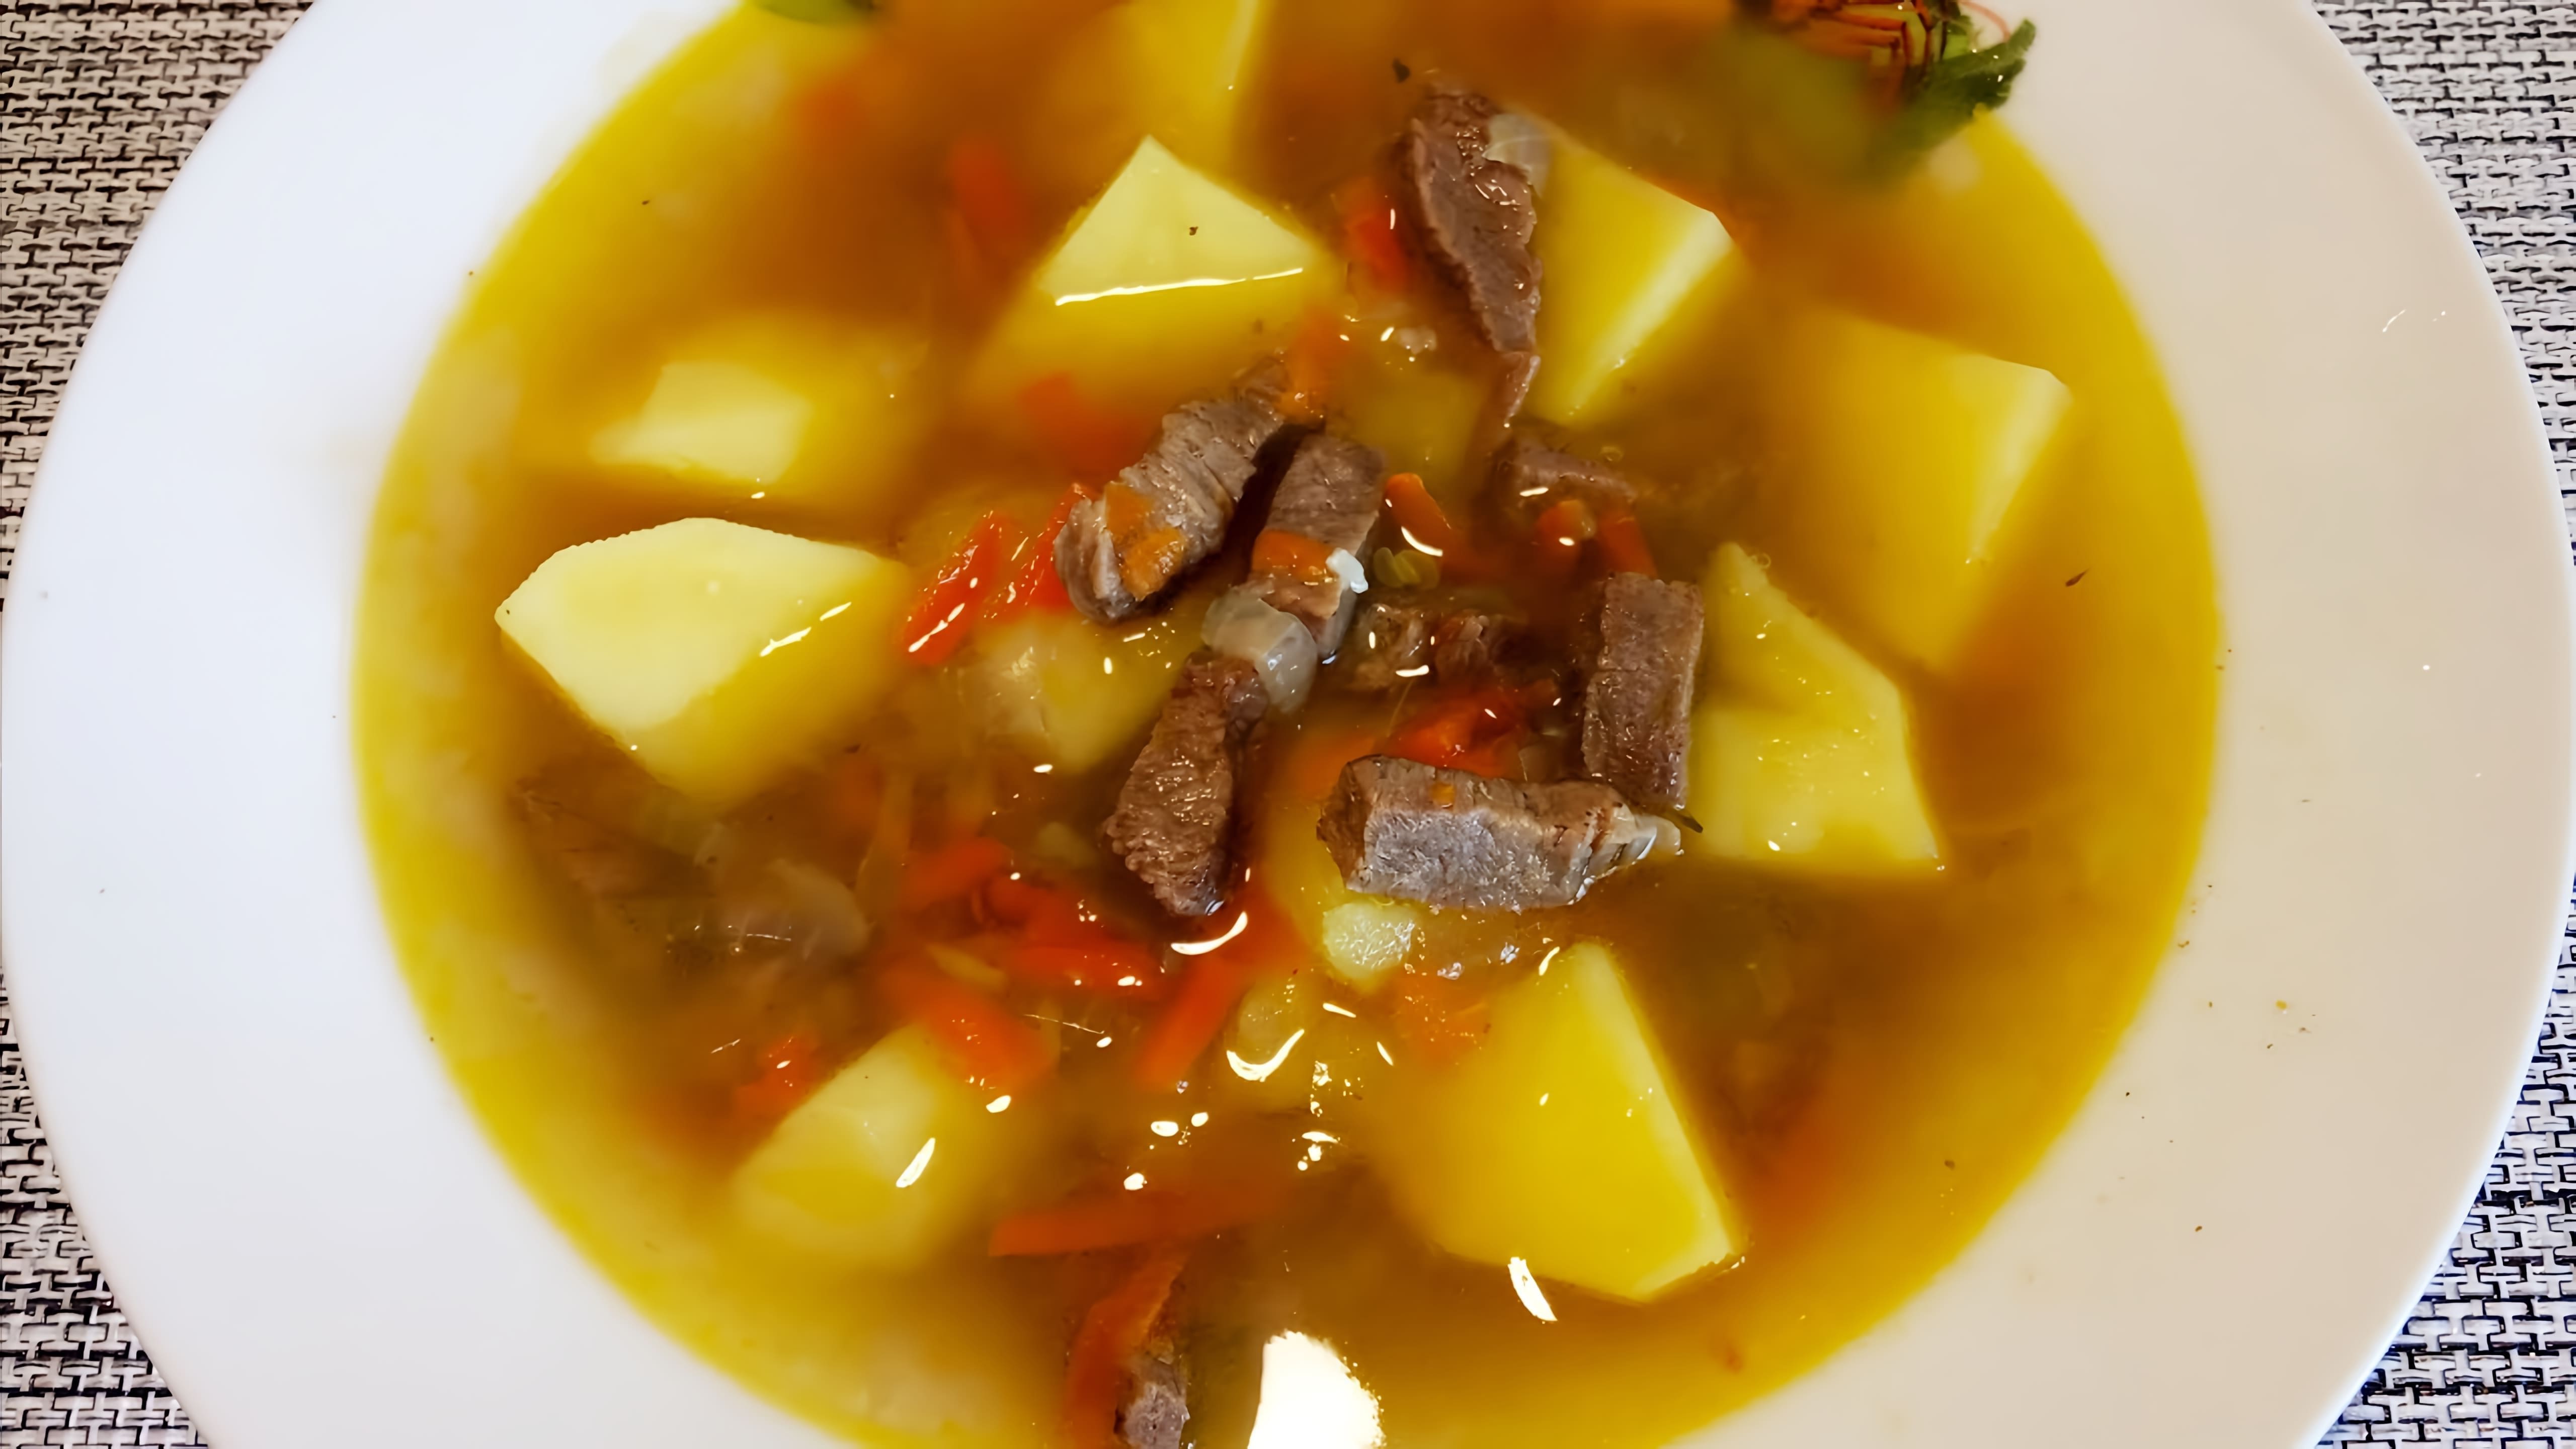 В этом видео демонстрируется процесс приготовления картофельного супа с мясом